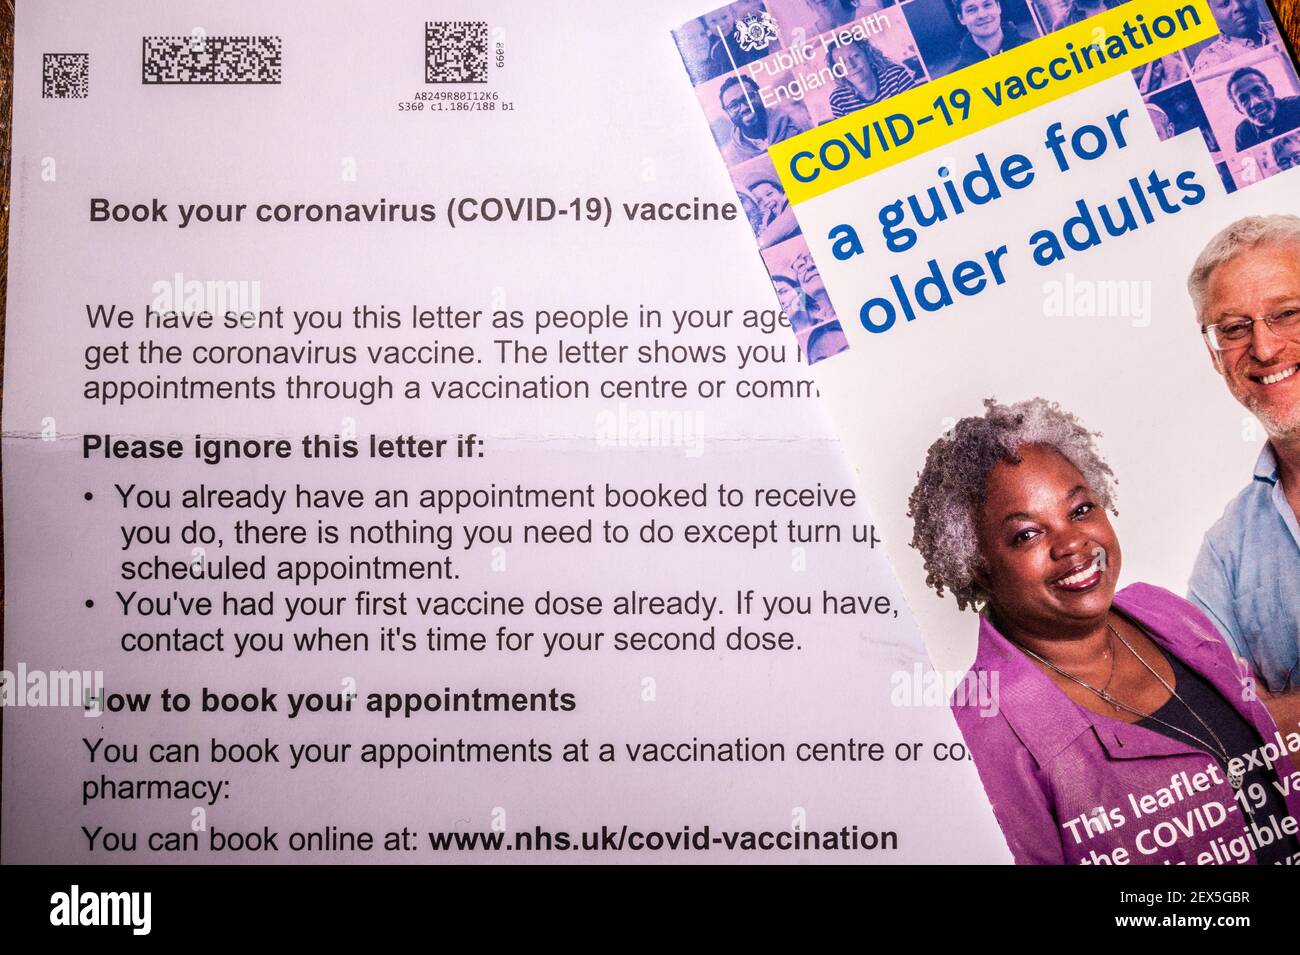 Lettera di invito del NHS per prenotare una vaccinazione con coronavirus per una persona di età superiore a 60 anni con foglio illustrativo. Ritoccato per rimuovere le informazioni personali. Foto Stock